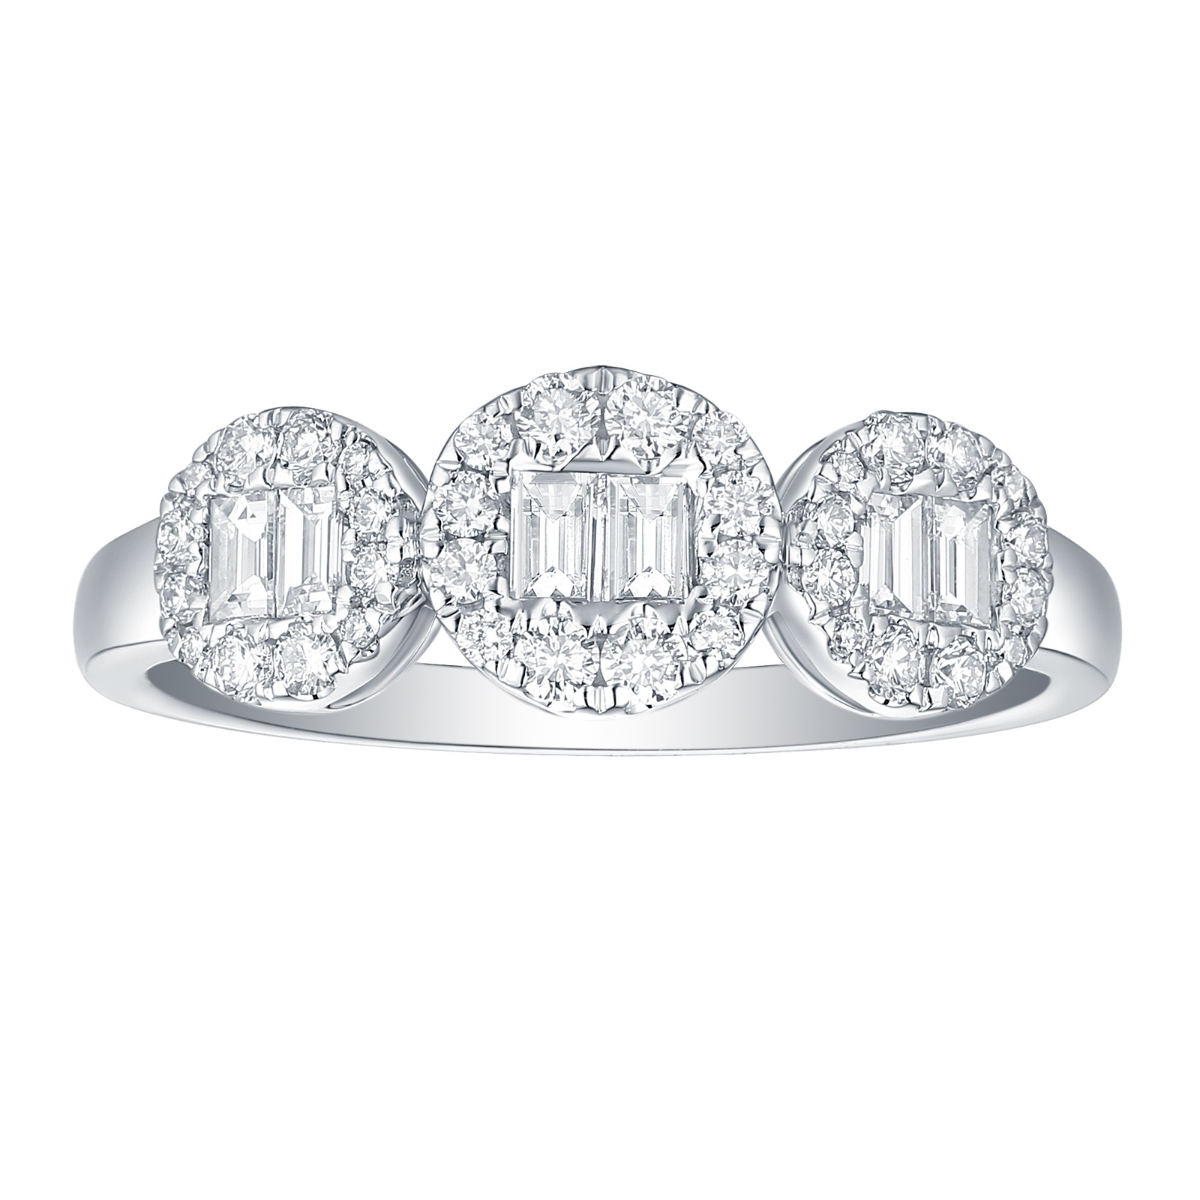 R34823WHT – 18K White Gold Diamond Ring, 0.55 TCW